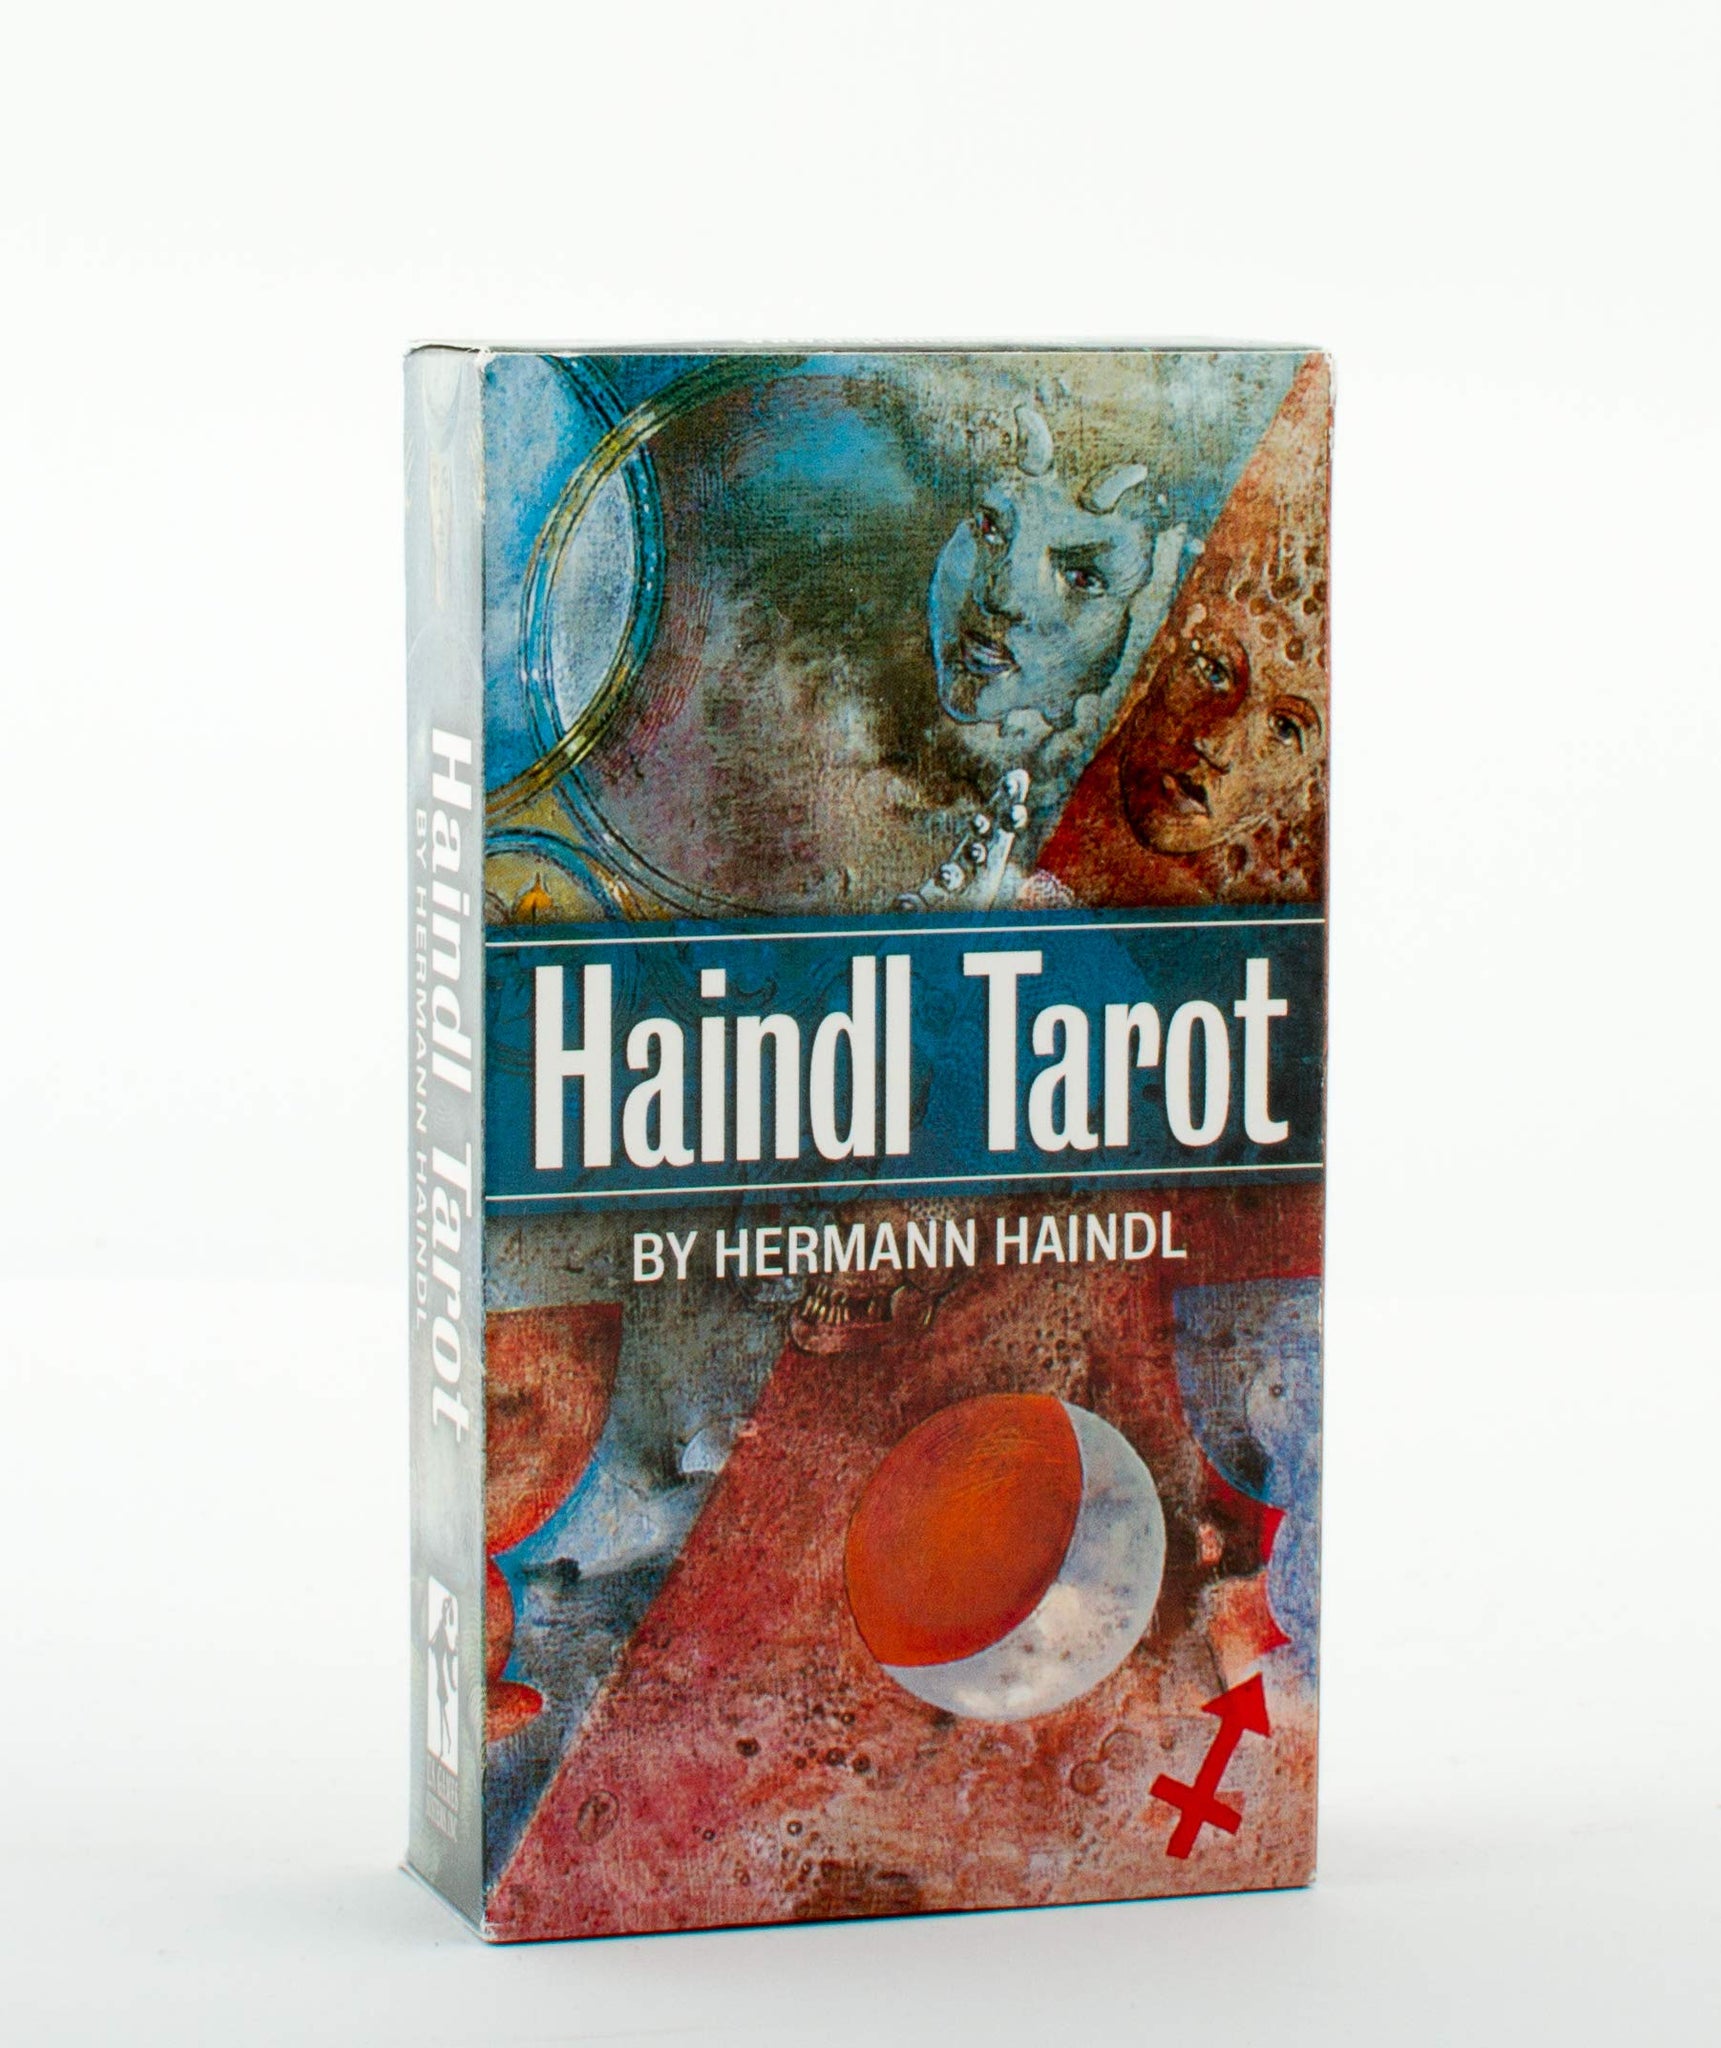 Haindl Tarot Deck by Hermann Haindl